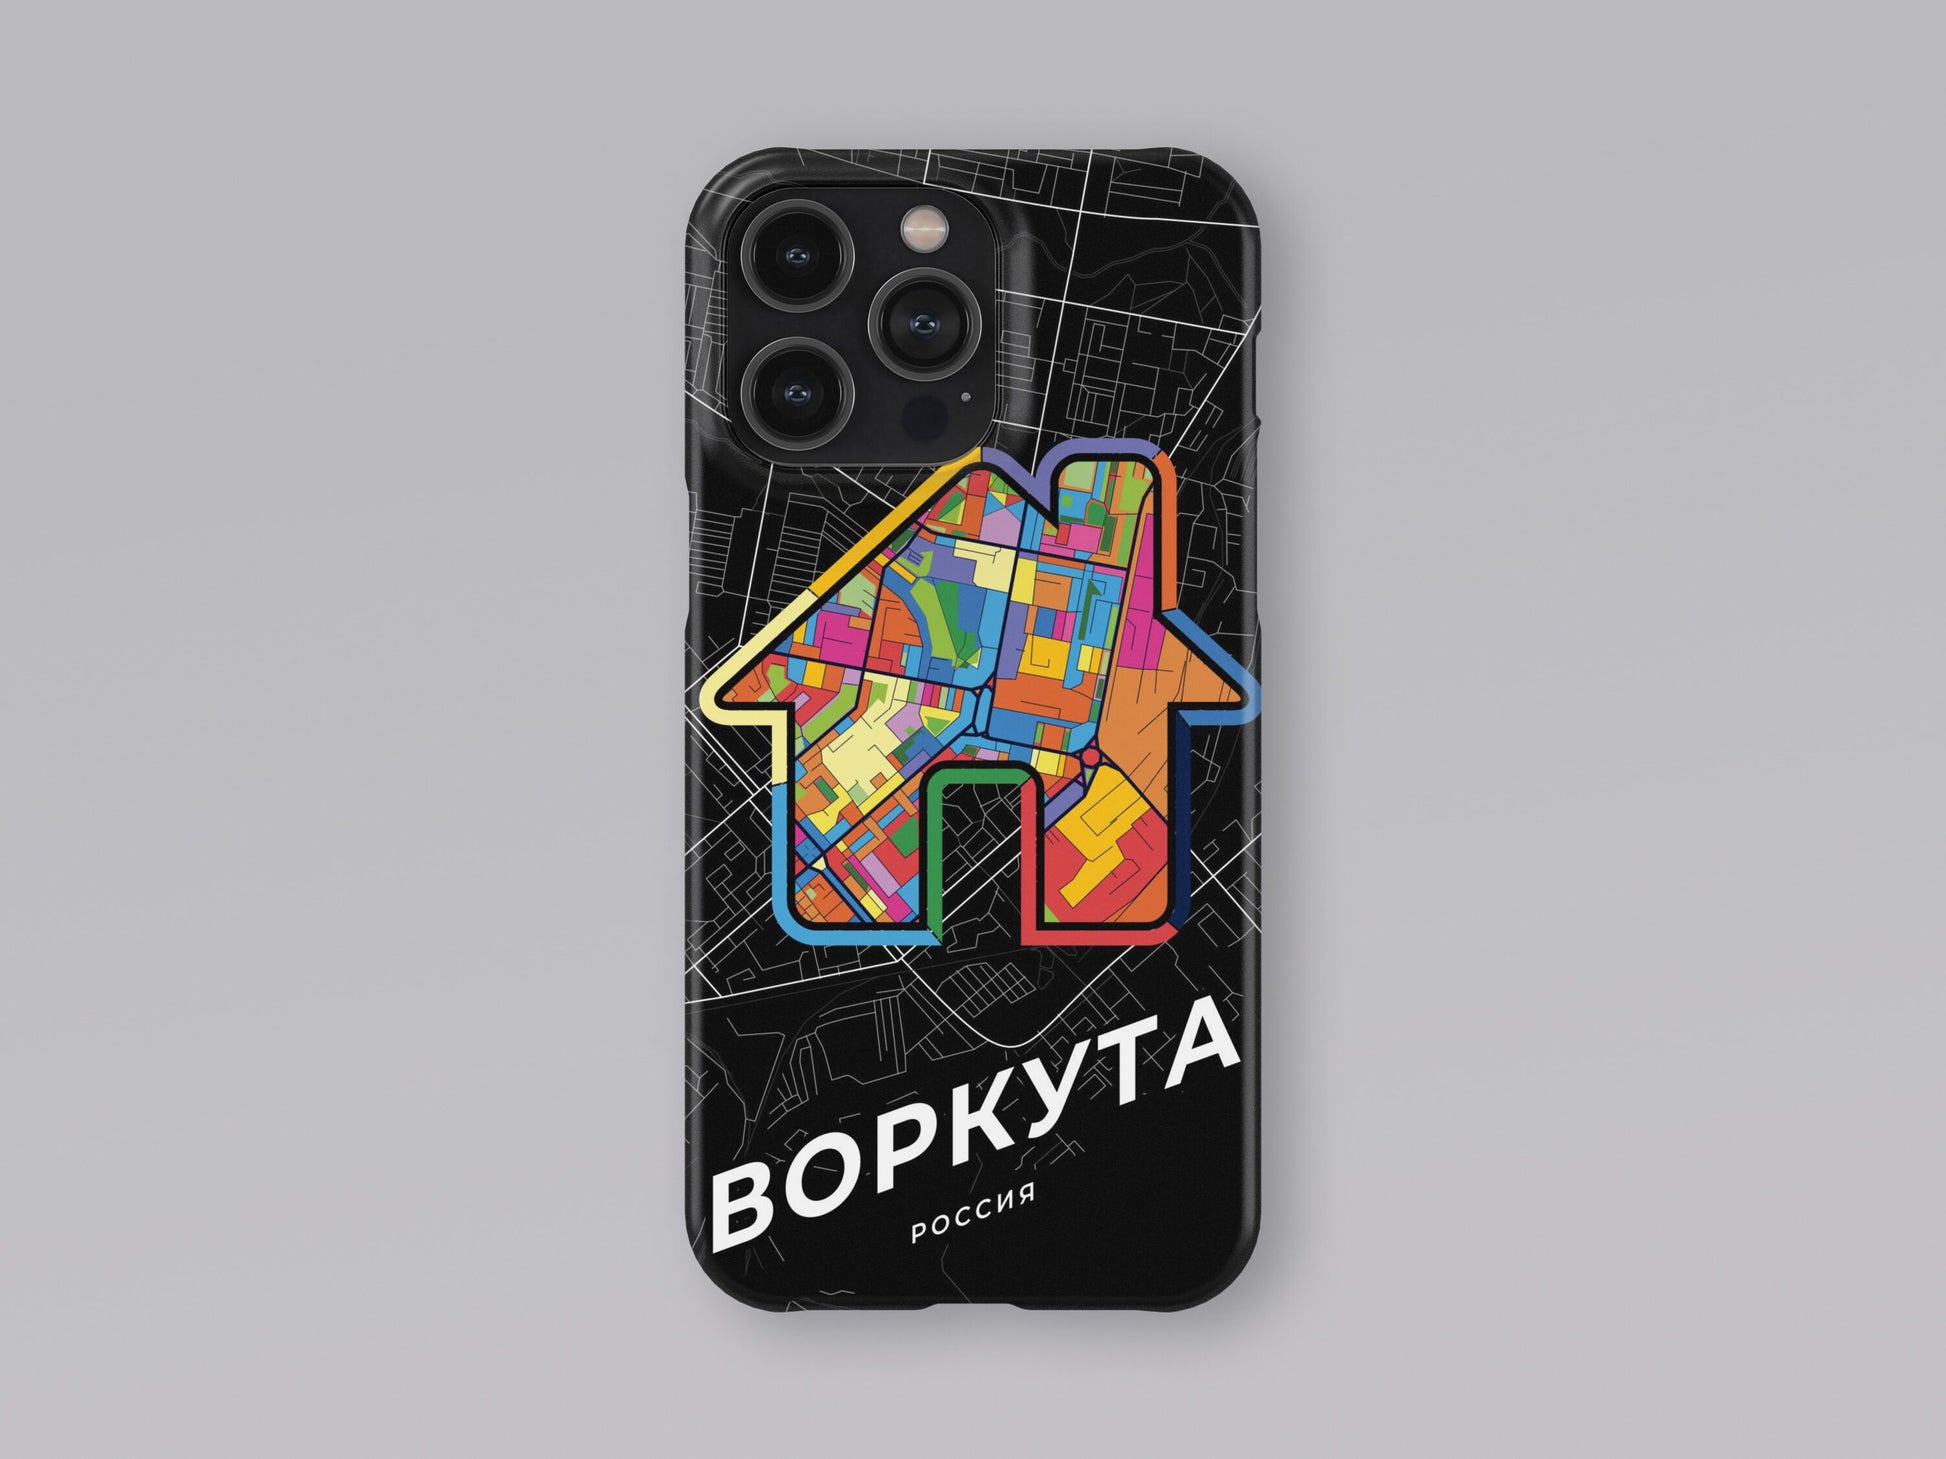 Vorkuta Russia slim phone case with colorful icon 3